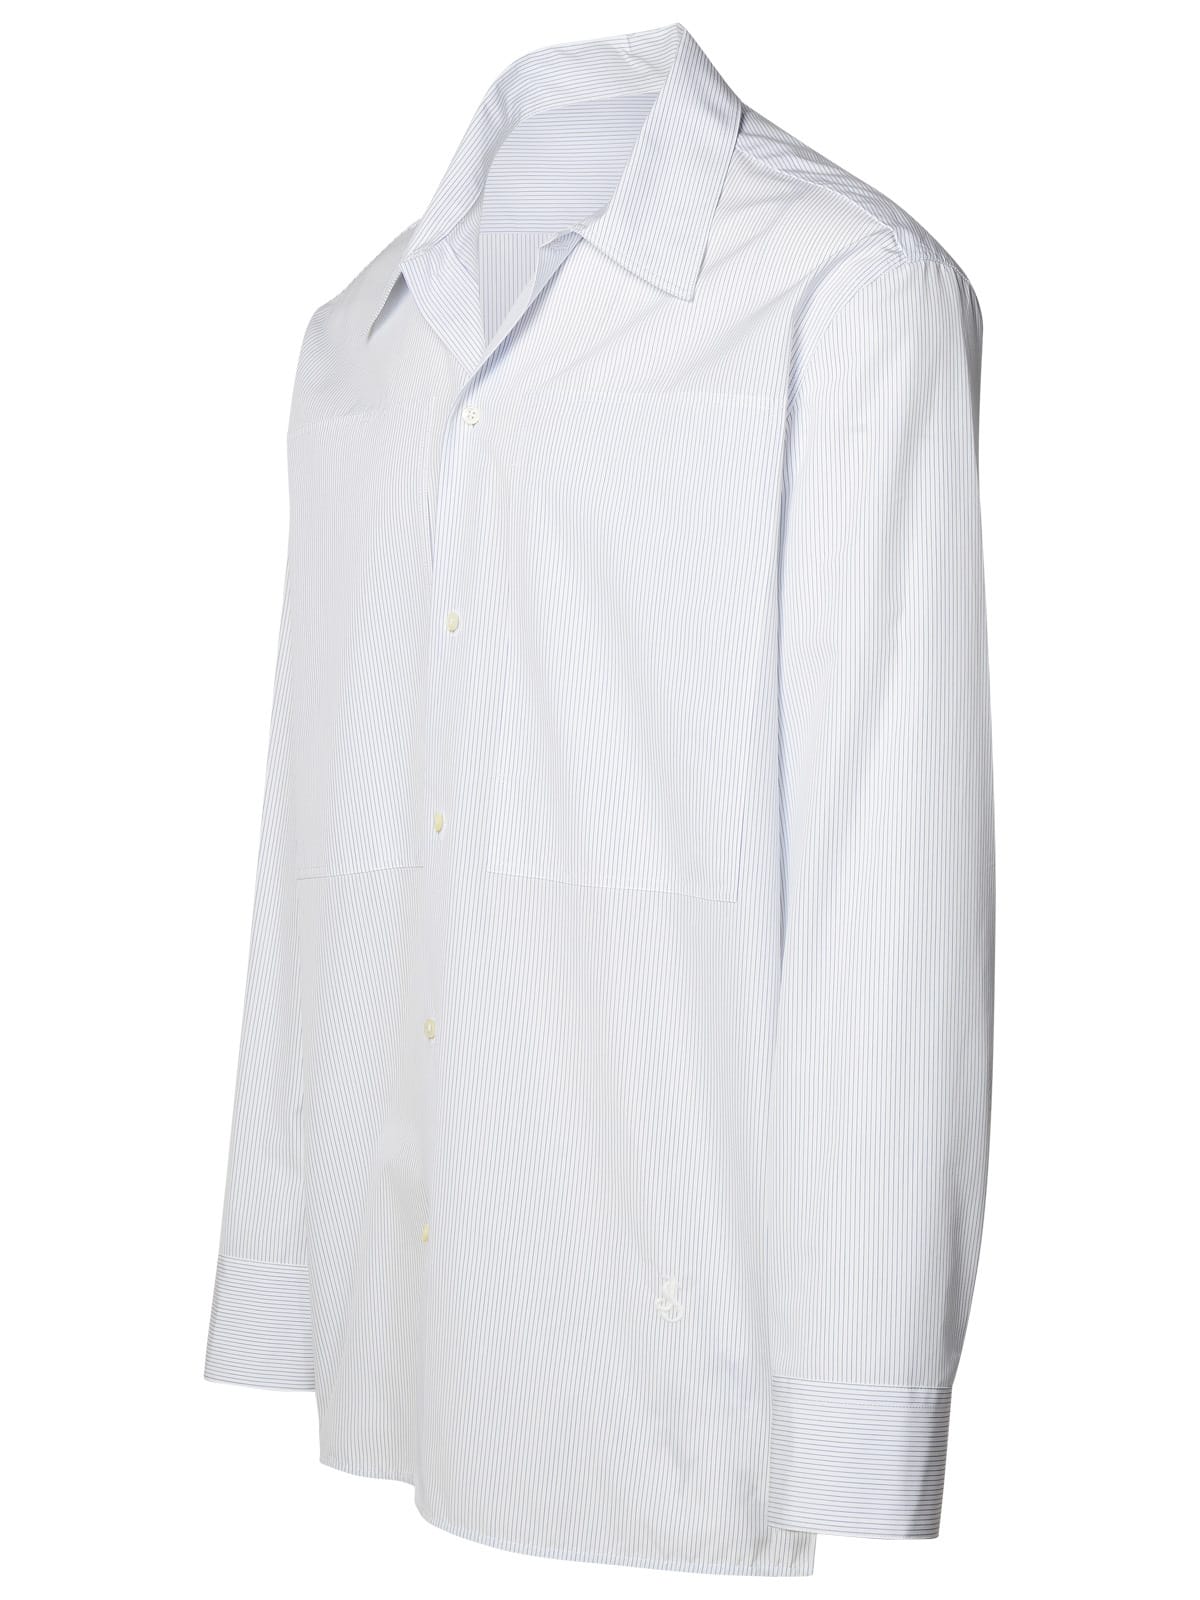 Shop Jil Sander Tuesday White Cotton Shirt